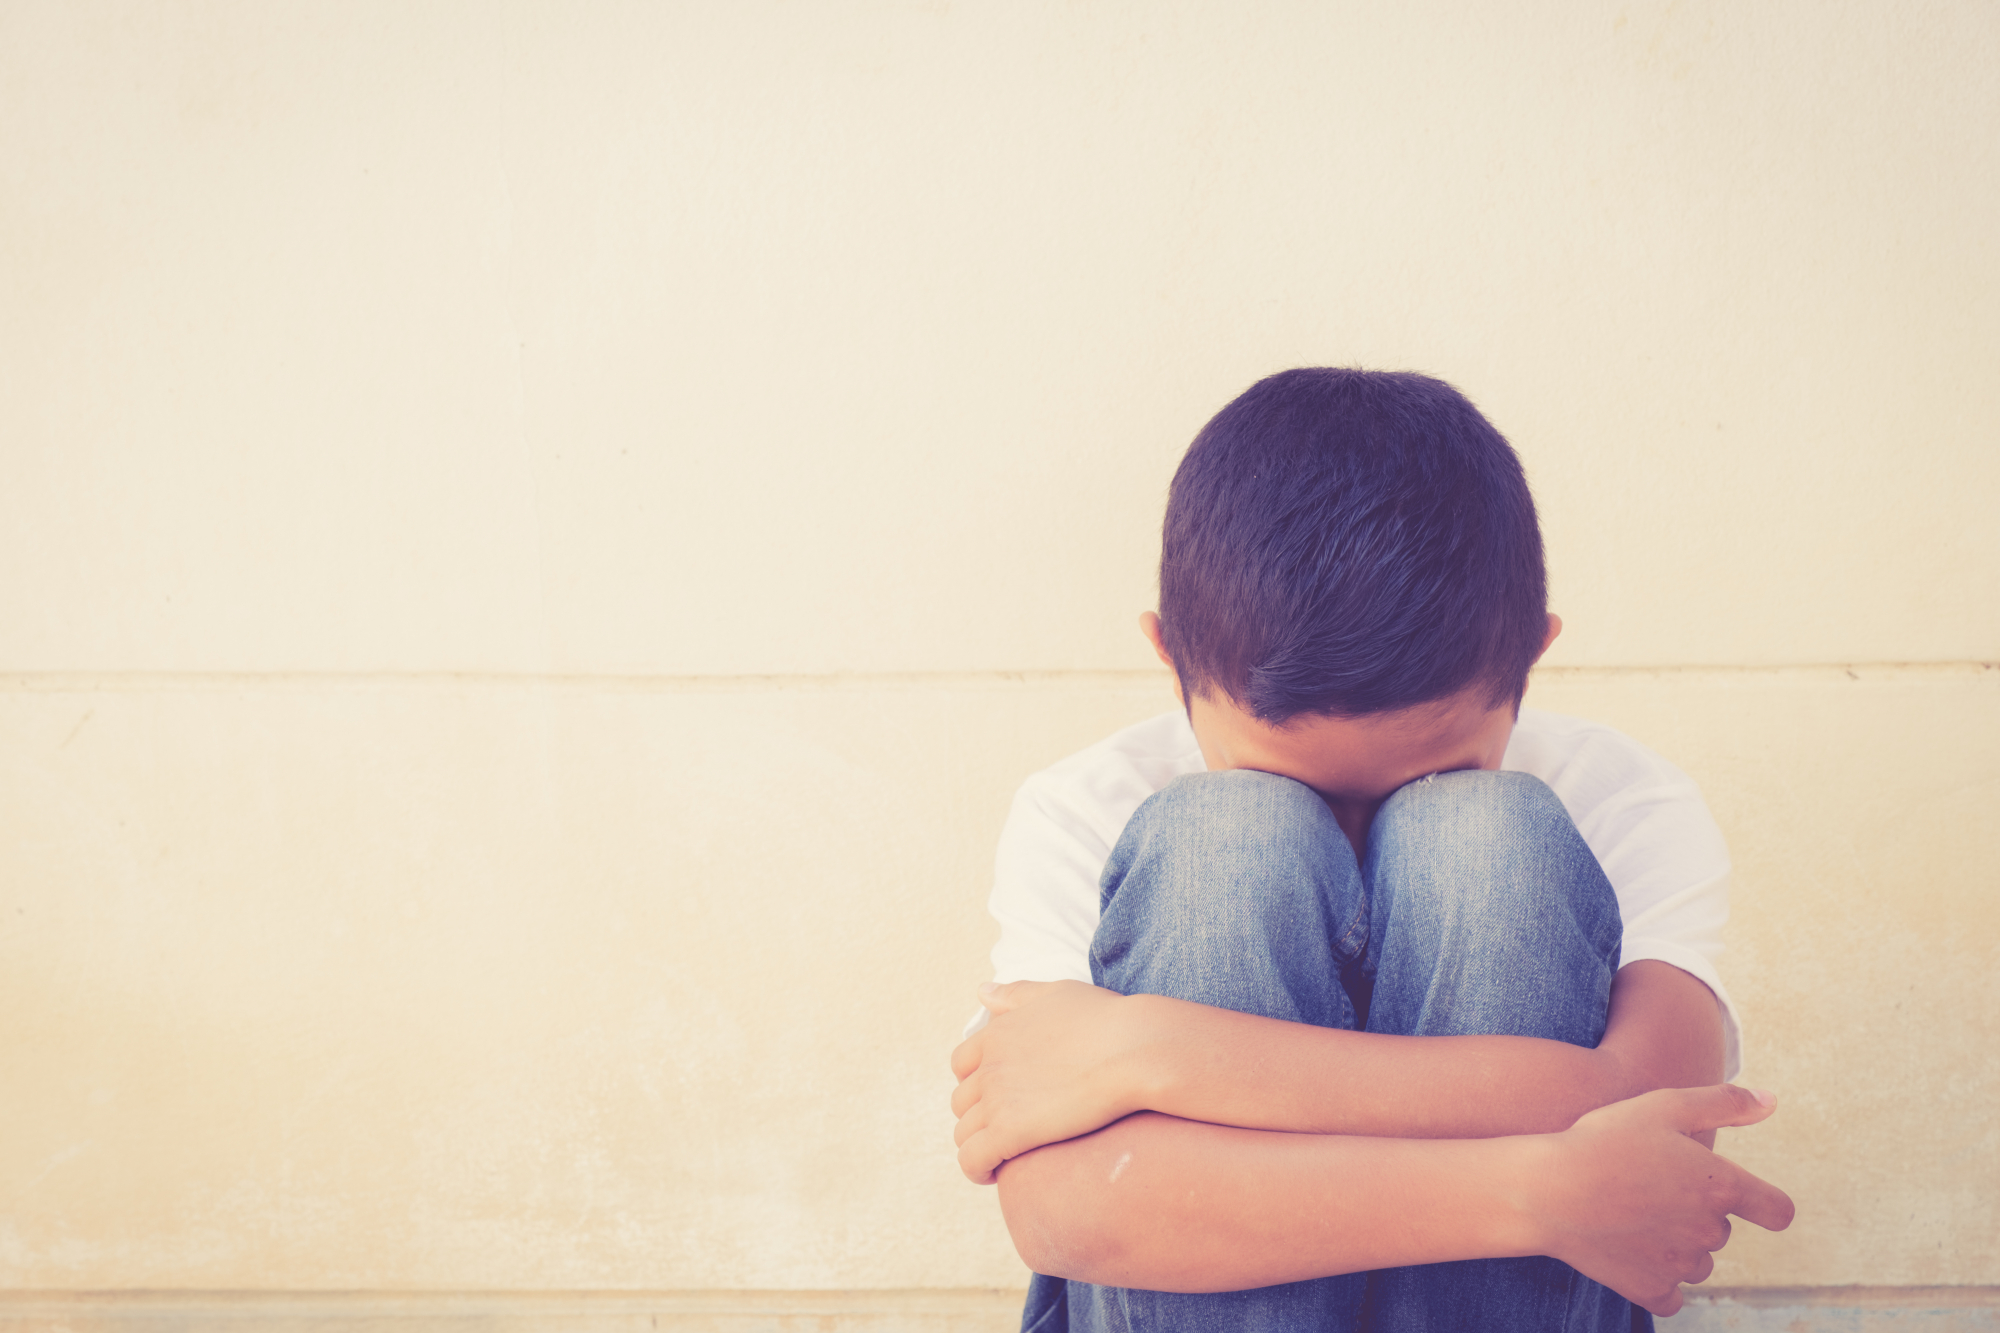 Σοκάρουν τα ευρήματα για το bullying στην Ελλάδα - Τα περιστατικά αγγίζουν το 50-60% του εφηβικού πληθυσμού